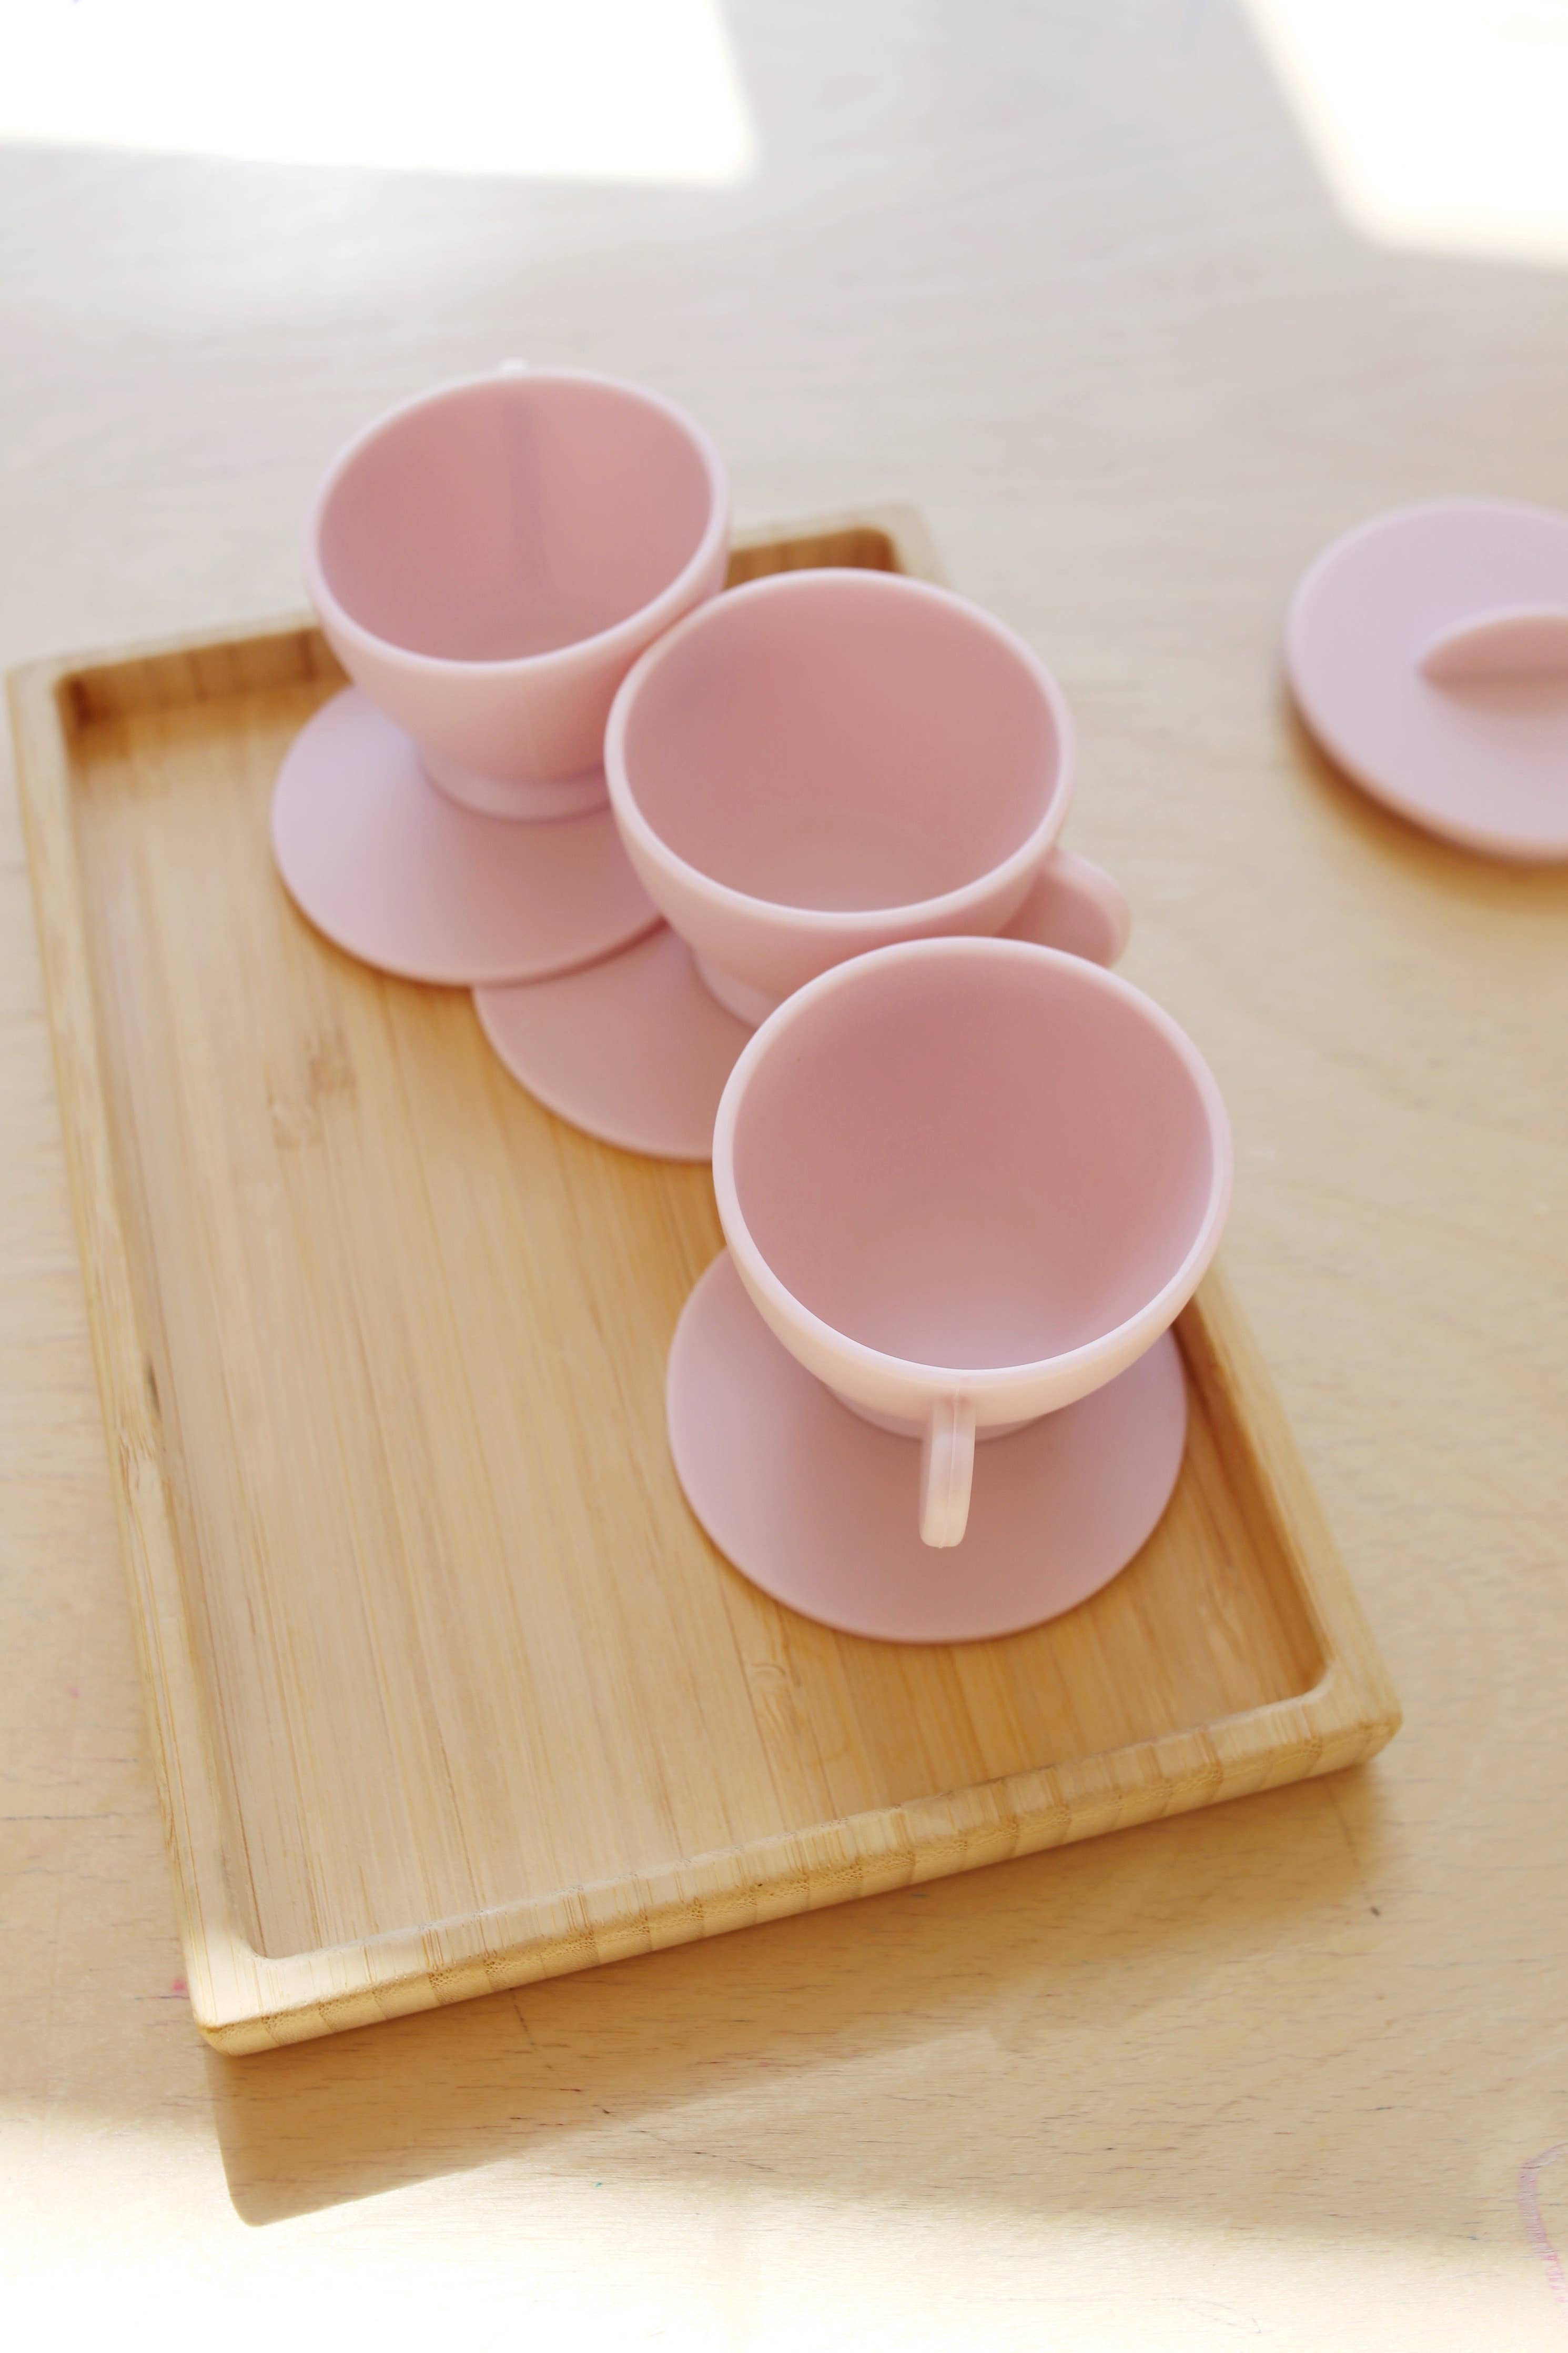 Primrose Pink Tea Play Set